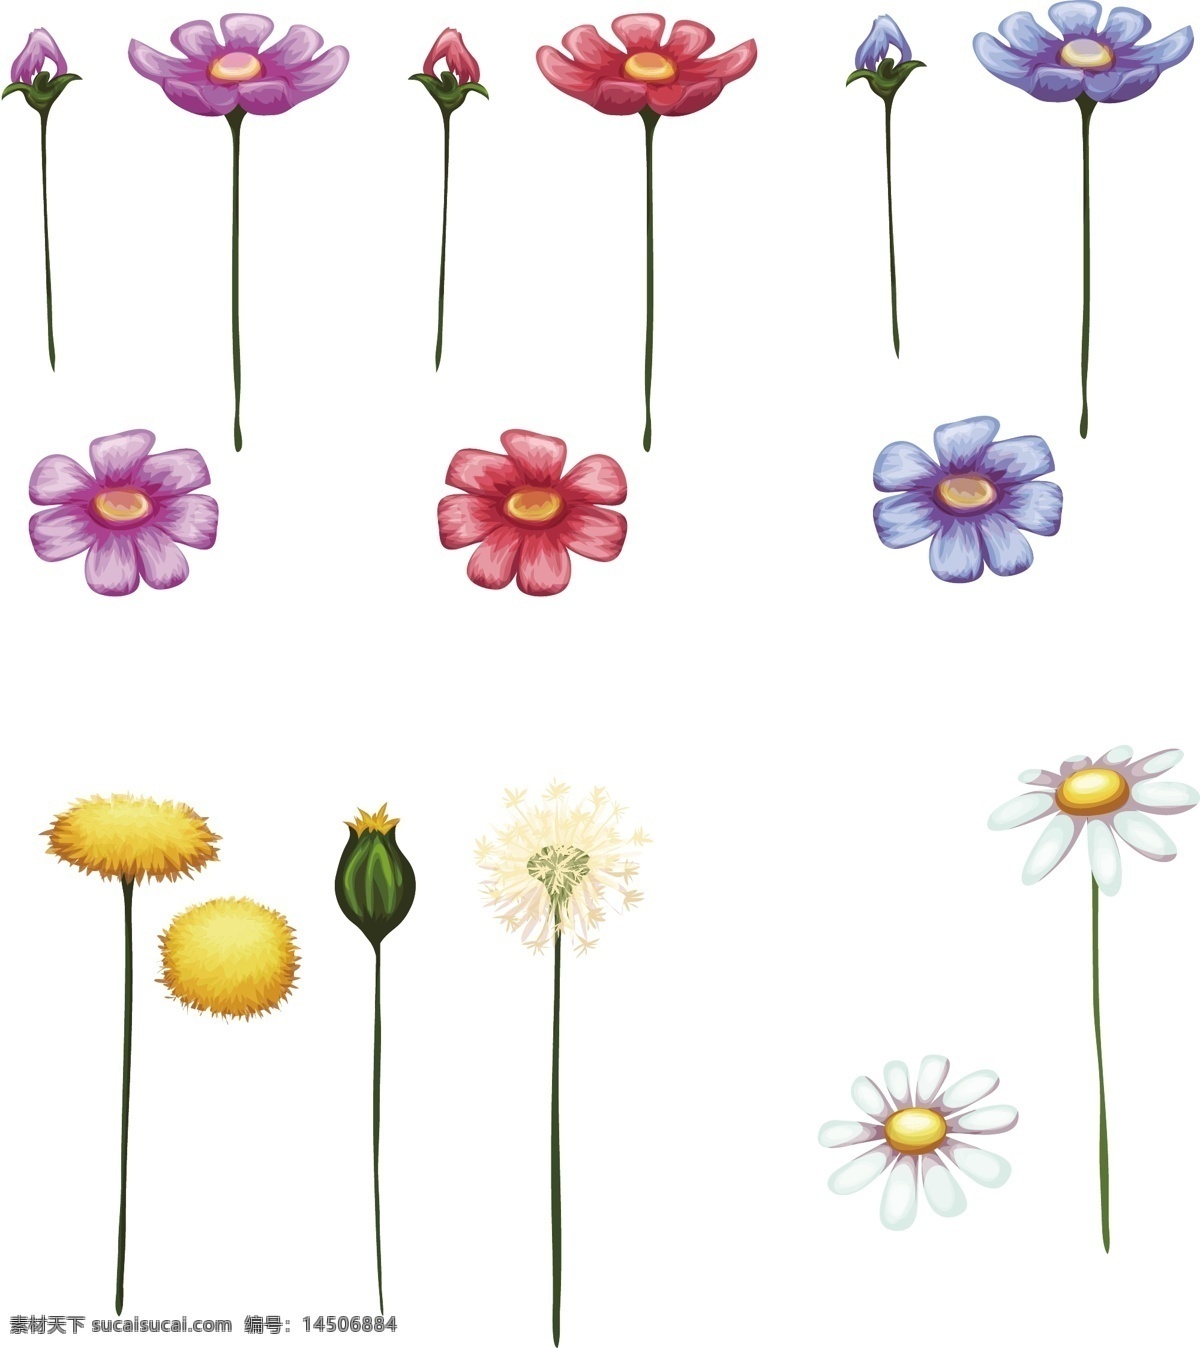 可爱 花朵 分解 卡通 矢量 植物 装饰 紫色 蓝色 粉色 红色 蒲公英 插画 树叶 夏天 春天 叶子 小清新 文艺 包装 海报